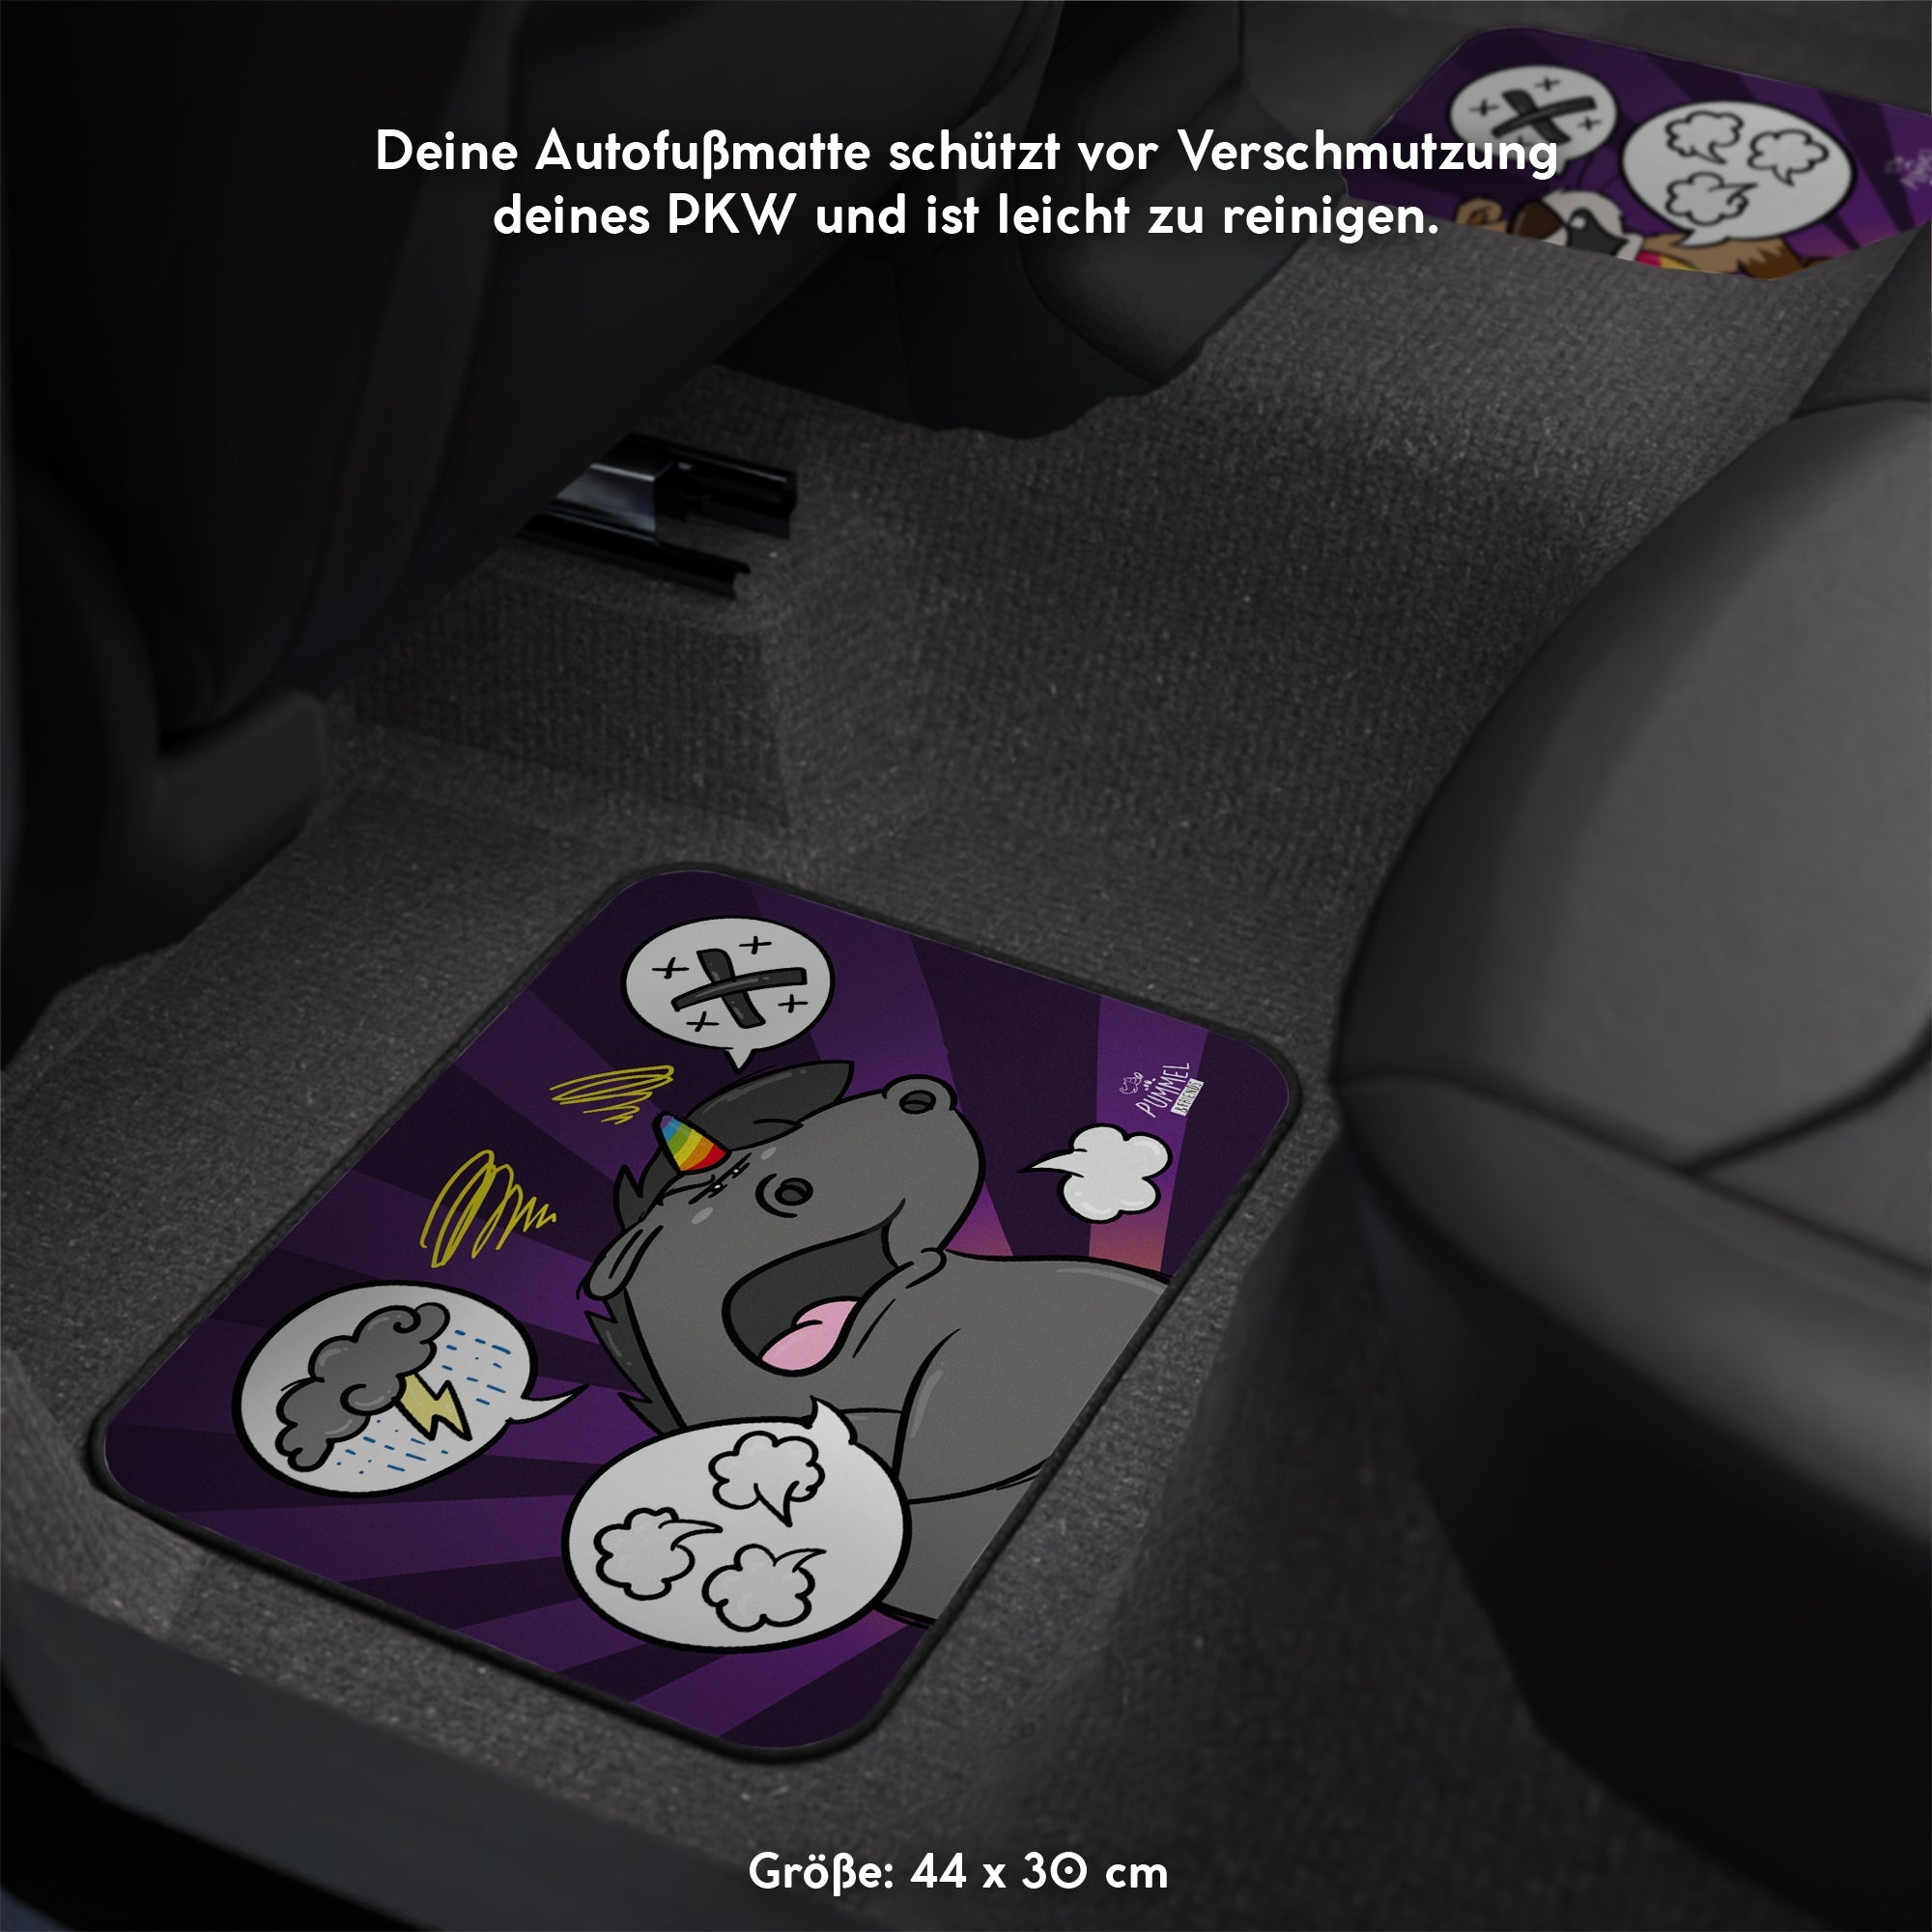 Auto FußMatten Fussmatten Auto-Fußmatte Für Civic Fit CRV XRV